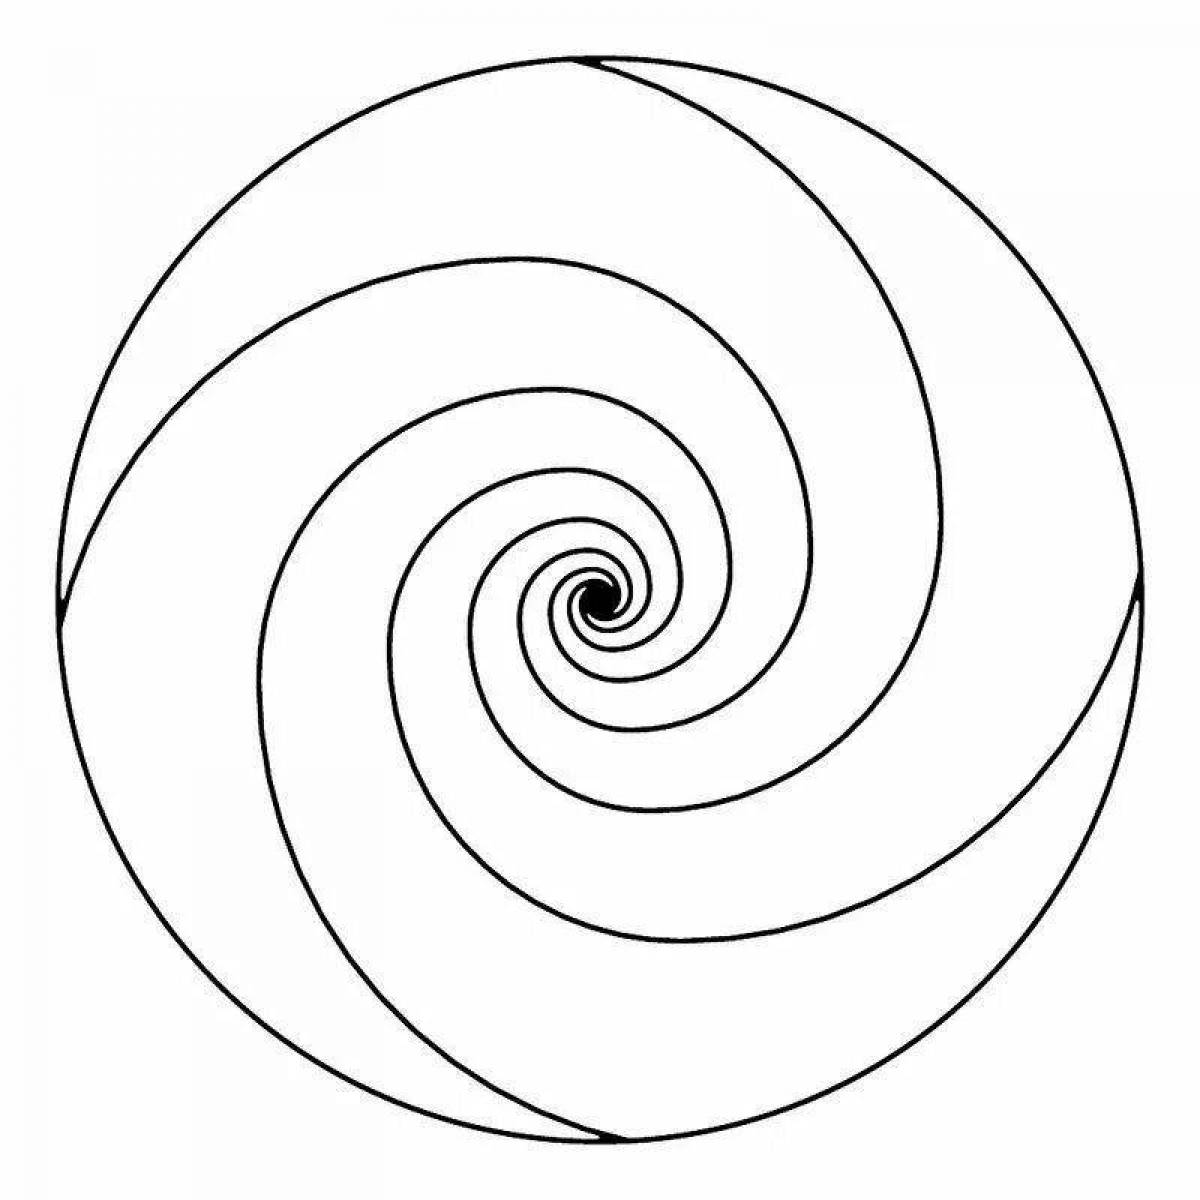 Fun coloring spiral pattern